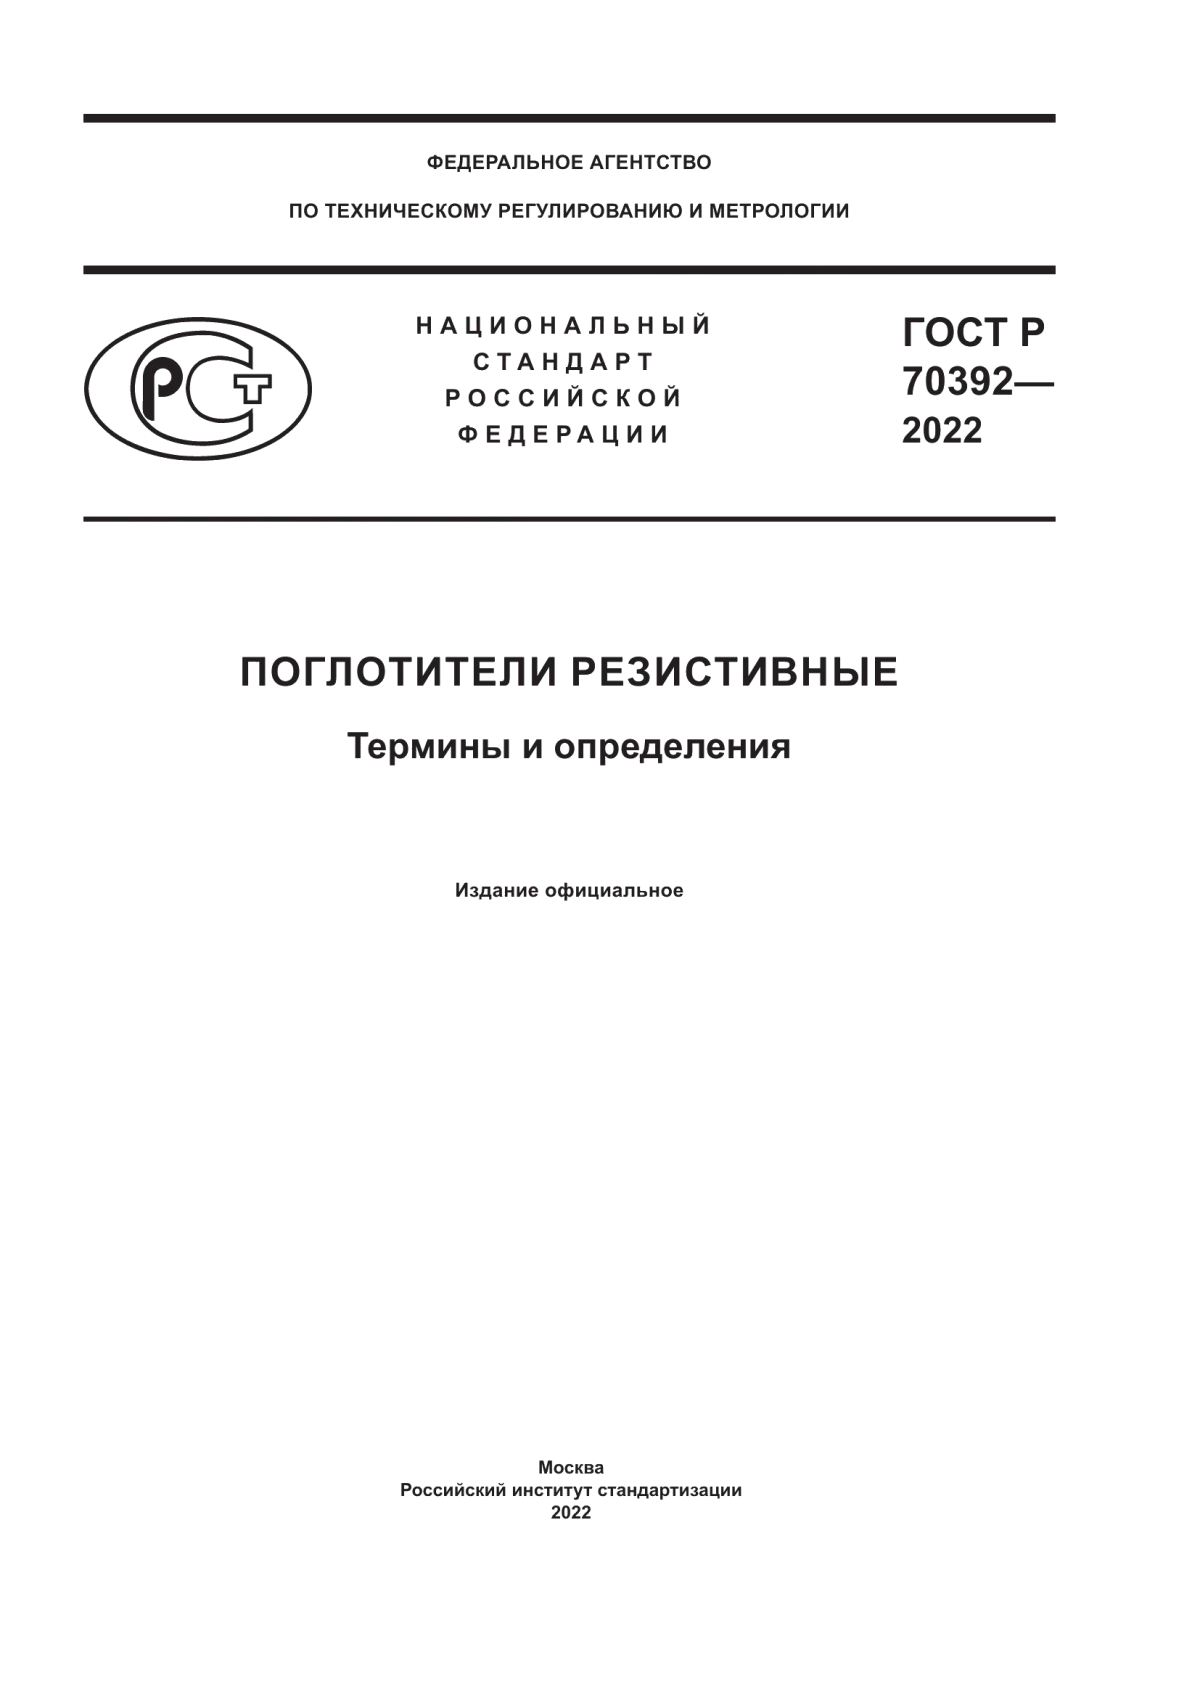 ГОСТ Р 70392-2022 Поглотители резистивные. Термины и определения